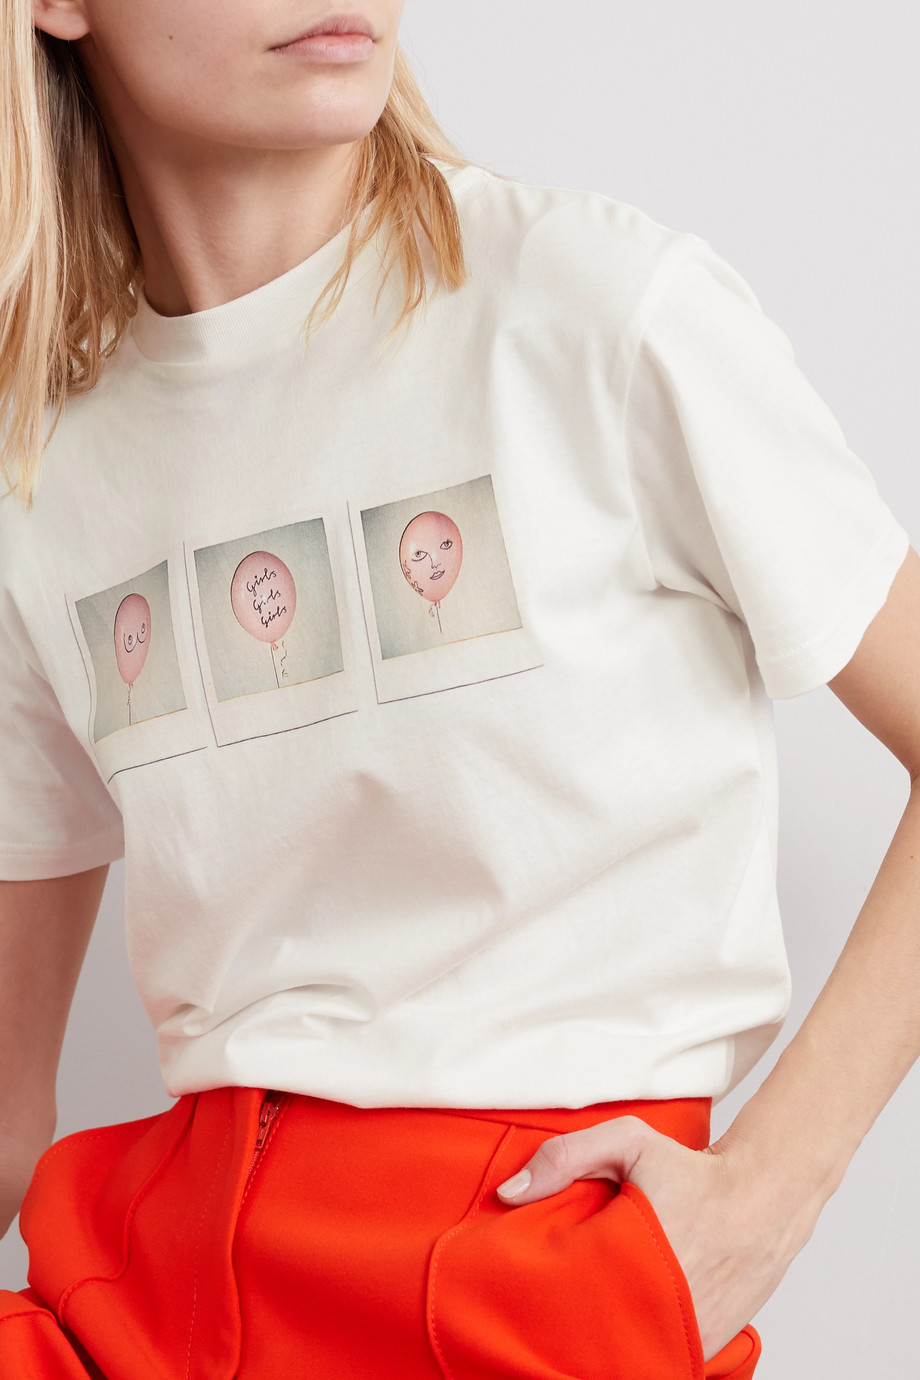 Net-a-Porter x ALEXACHUNG International Women's Day T-shirt 2020.